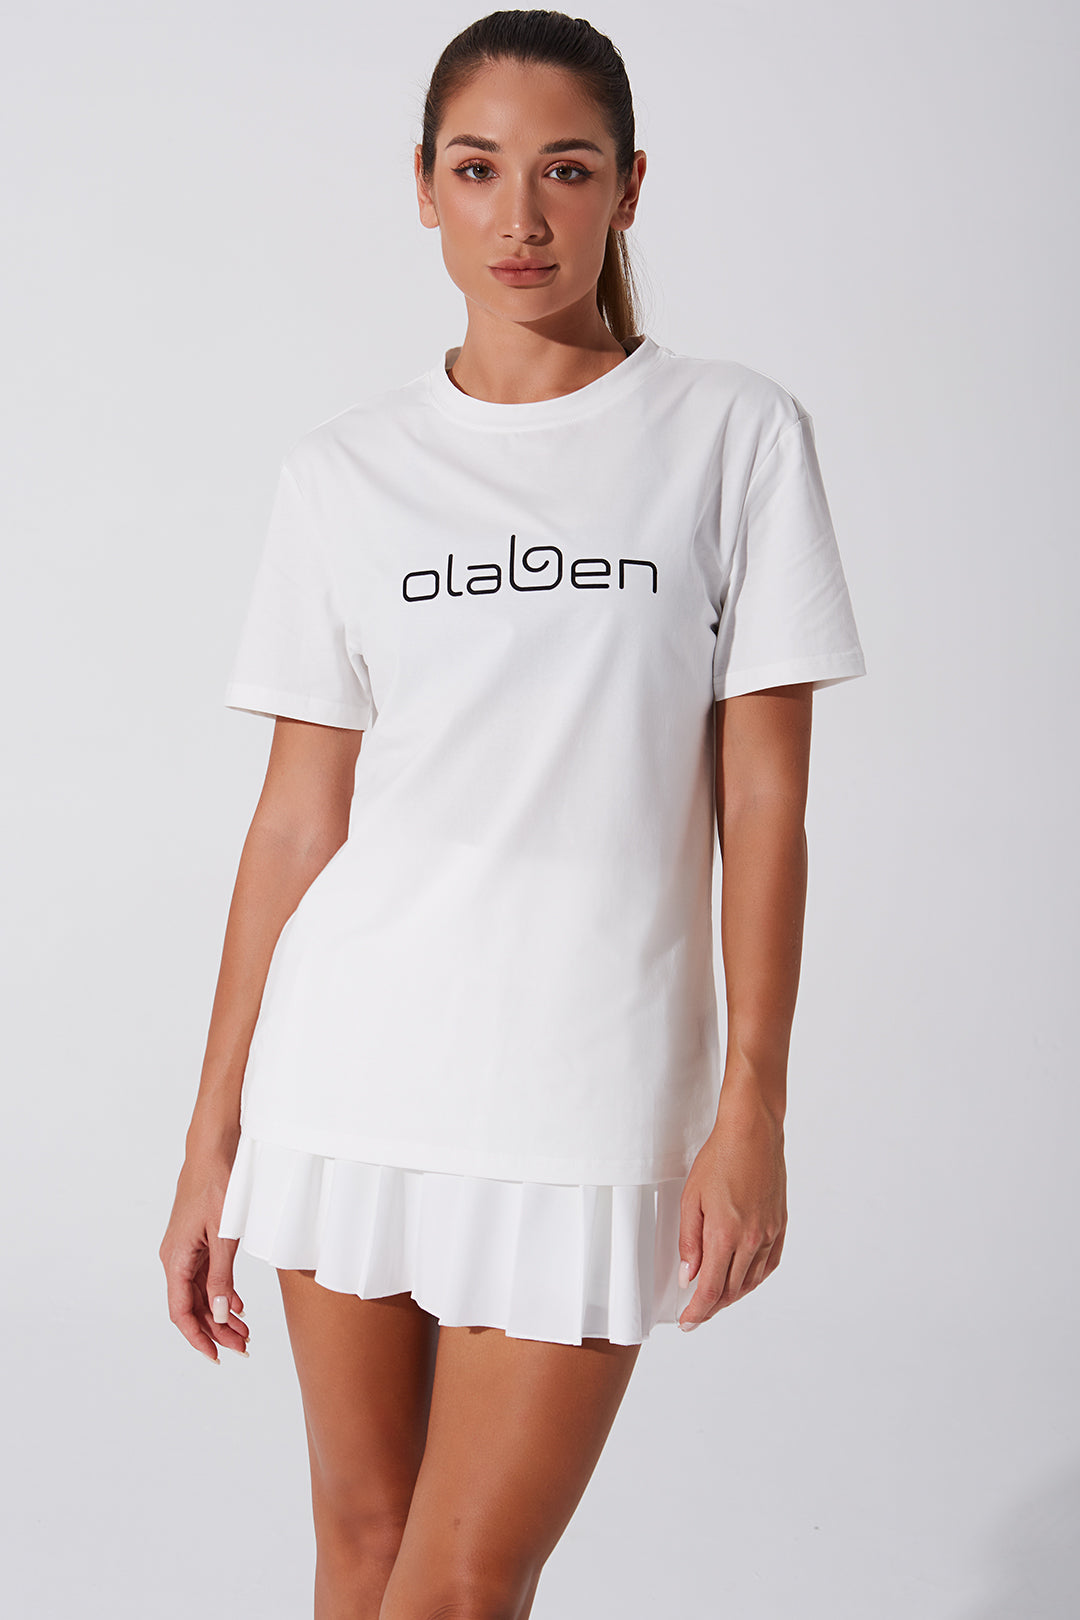 Unisex white short sleeve tee for women - versatile and stylish fashion choice.